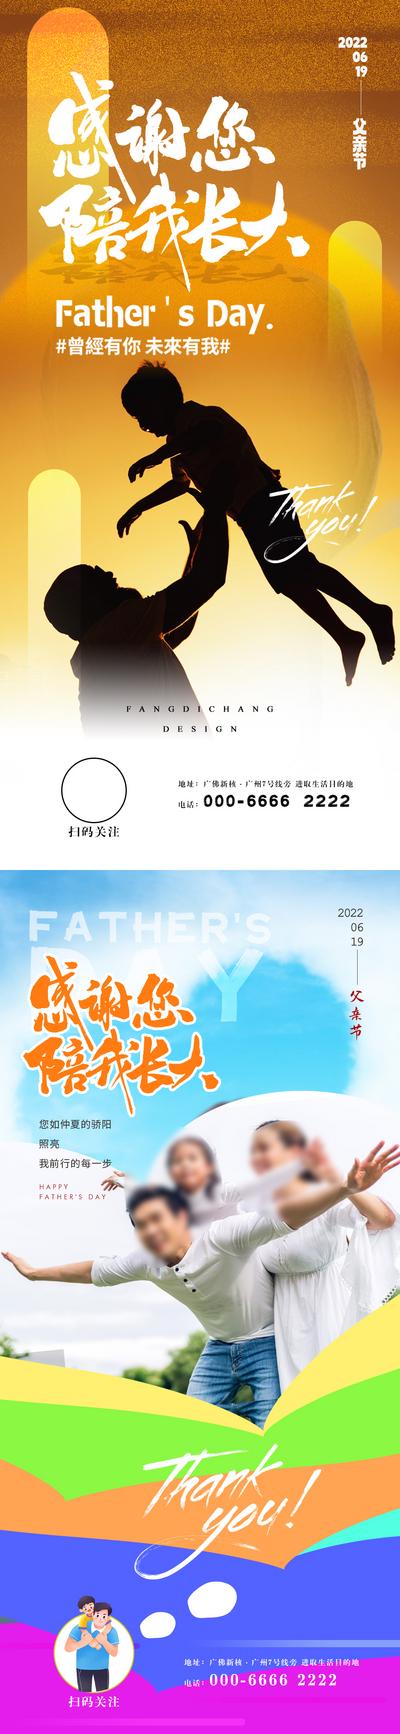 南门网 广告 海报 节日 父亲节 系列 商业 西方 光影 剪影 亲子 爱 底纹 简约 时尚 微信